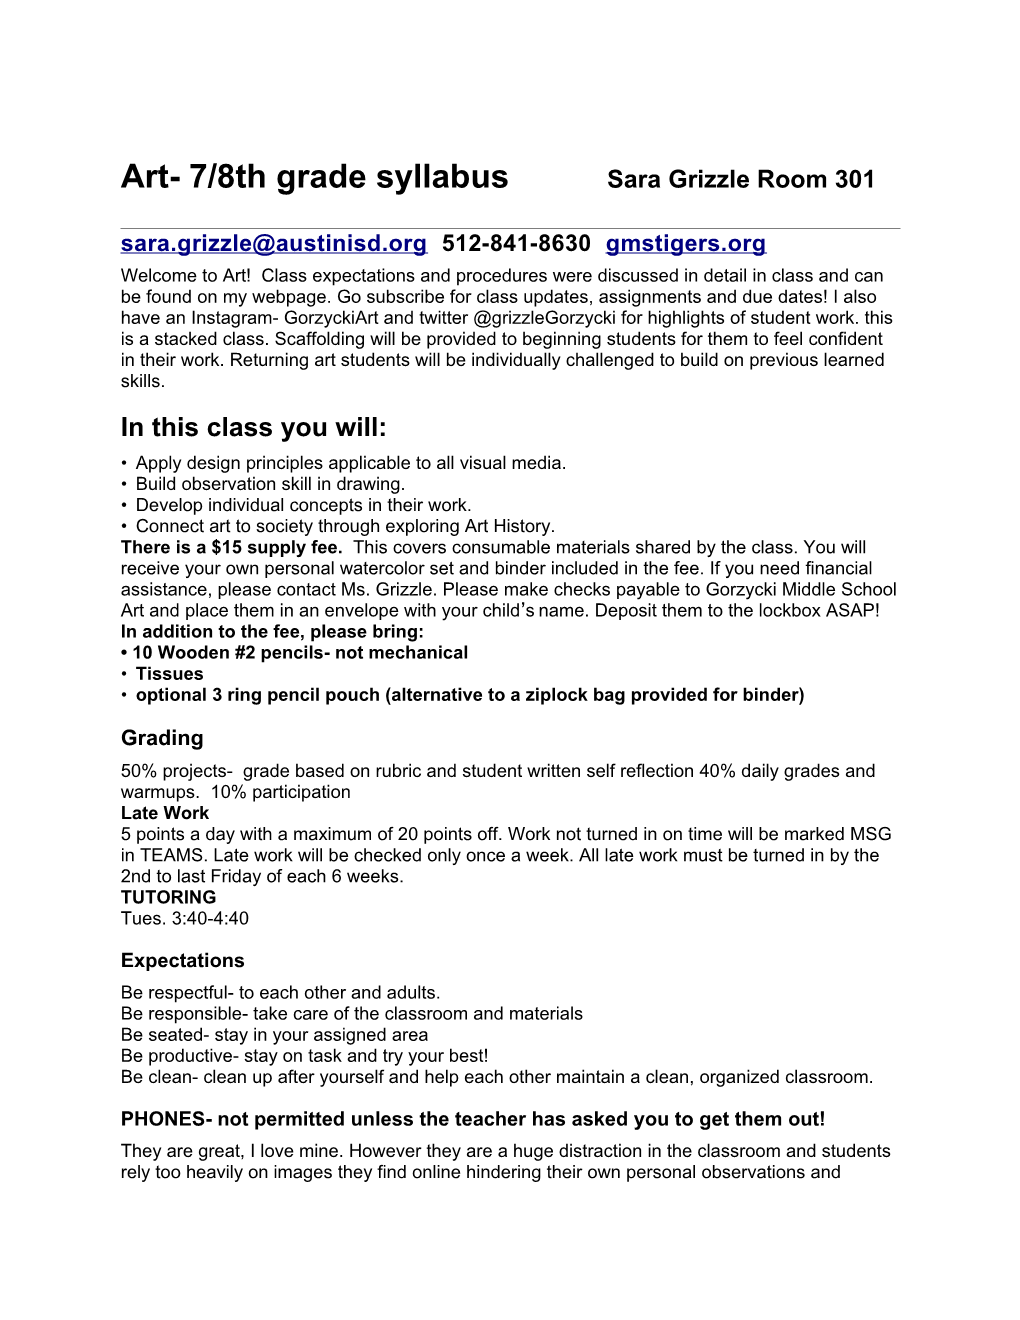 Art- 7/8Th Grade Syllabus Sara Grizzle Room 301